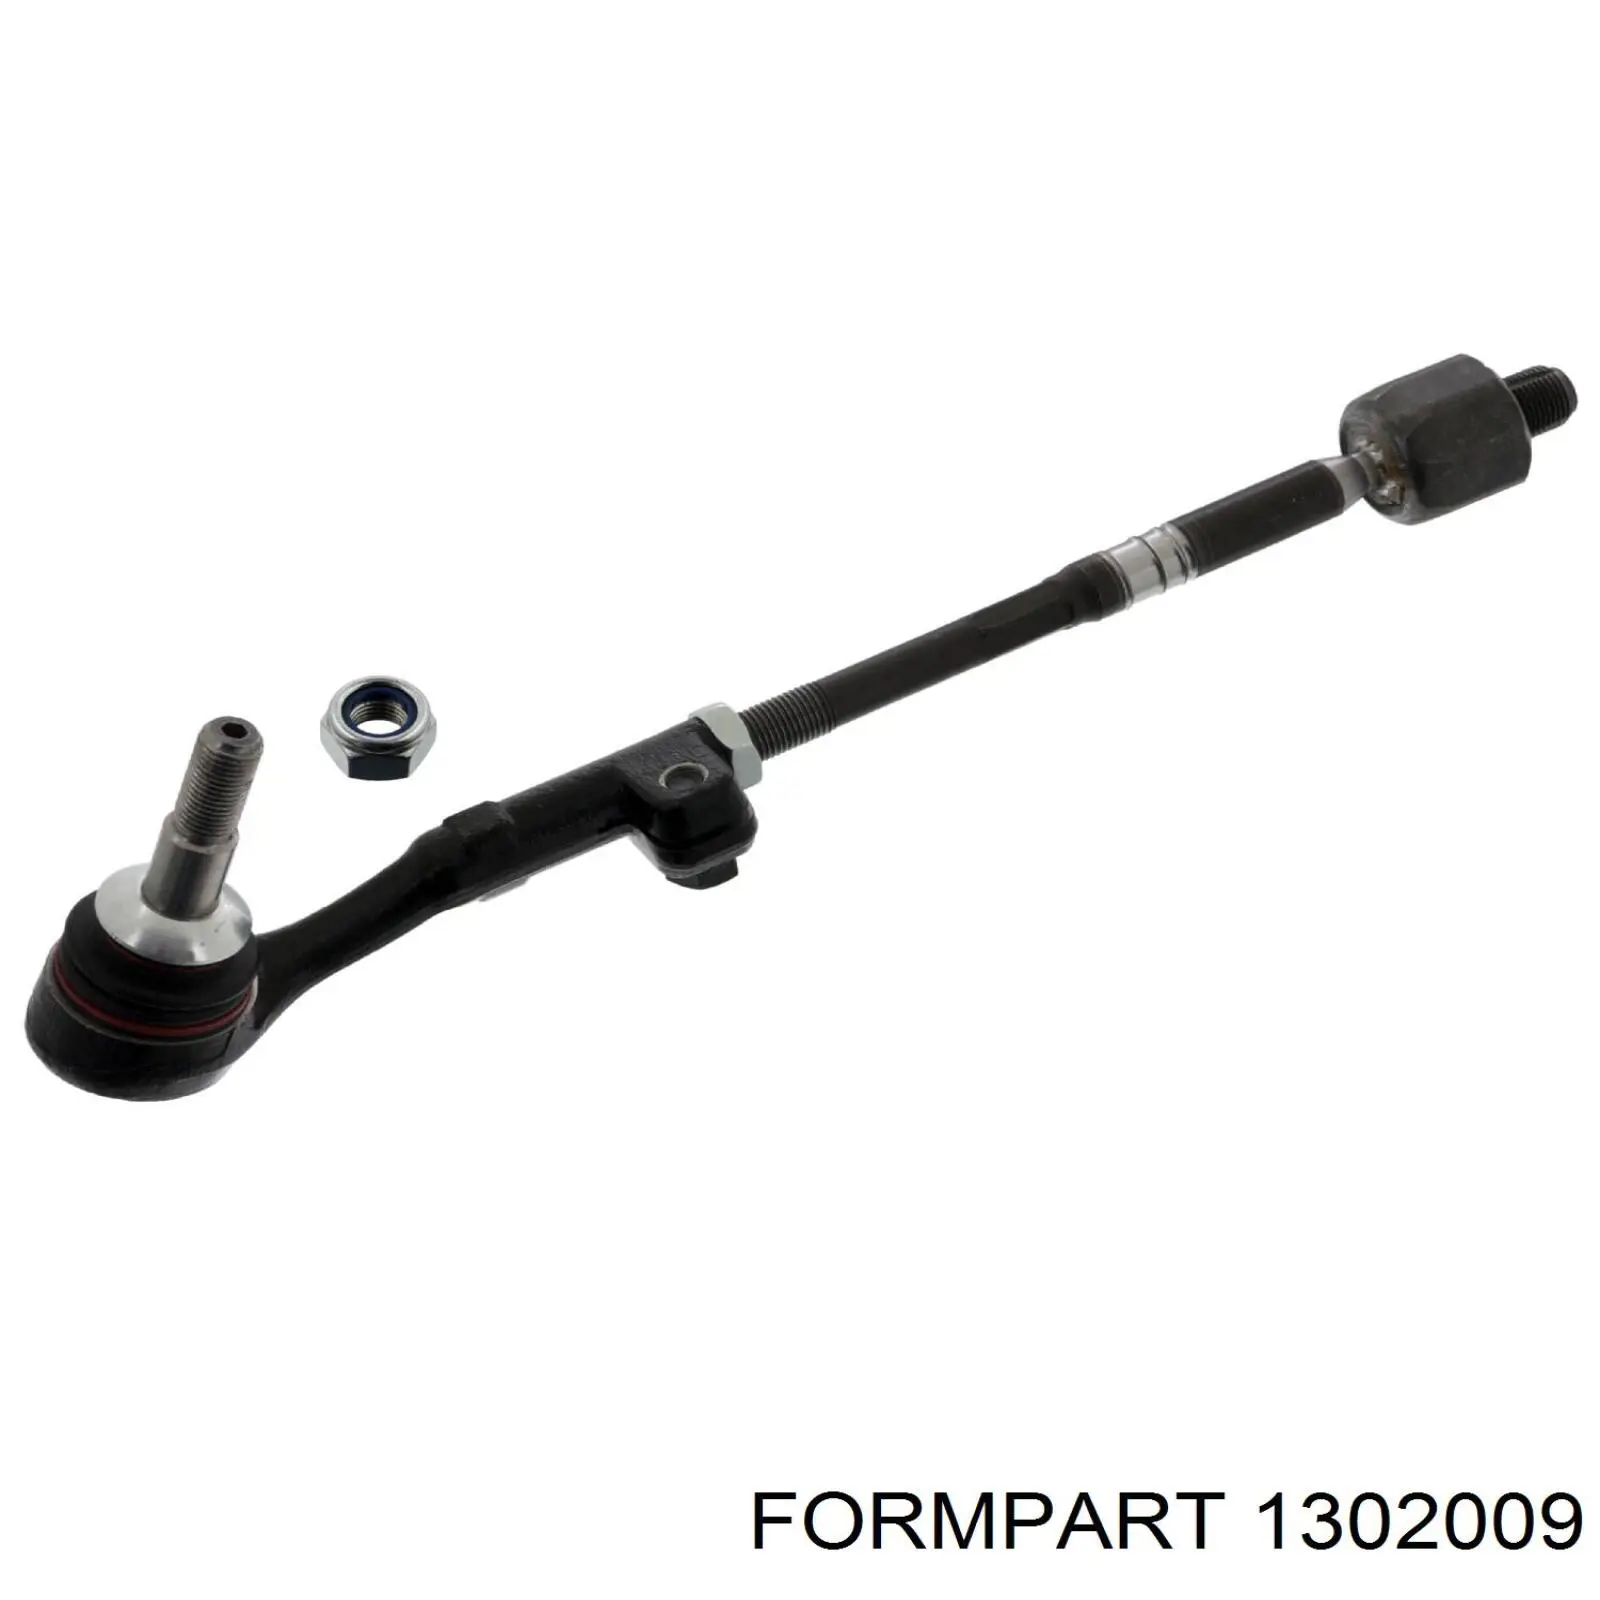 1302009 Formpart/Otoform rótula barra de acoplamiento exterior